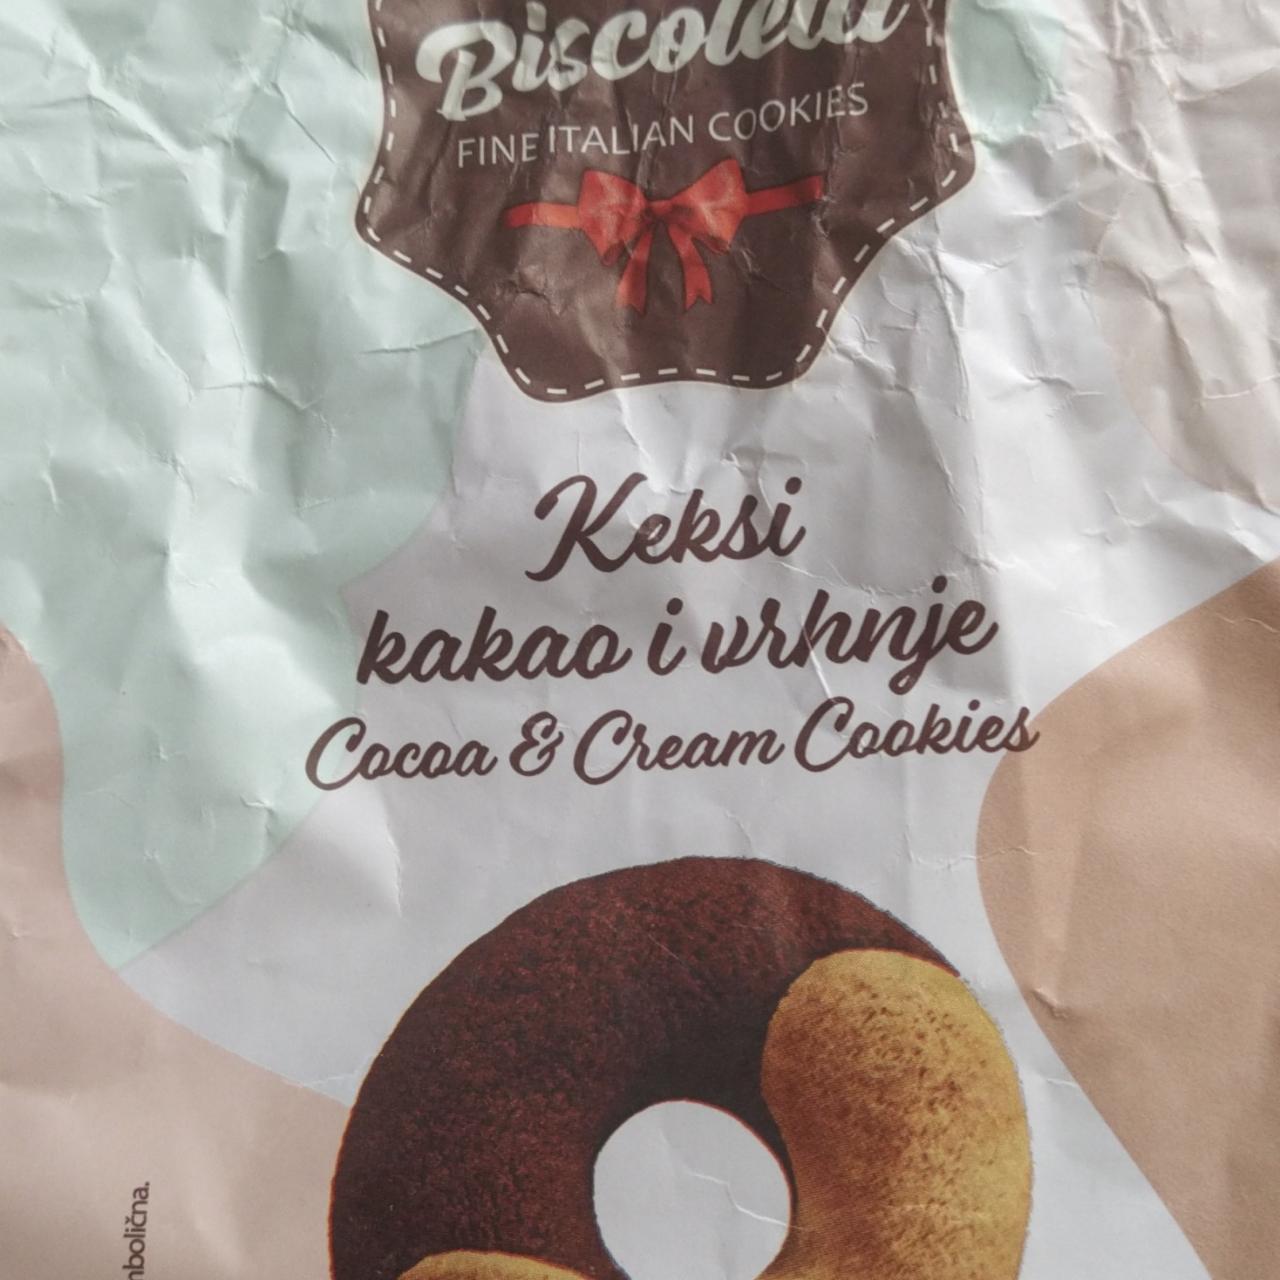 Fotografie - Biscoletti Cocoa & Cream Cookies